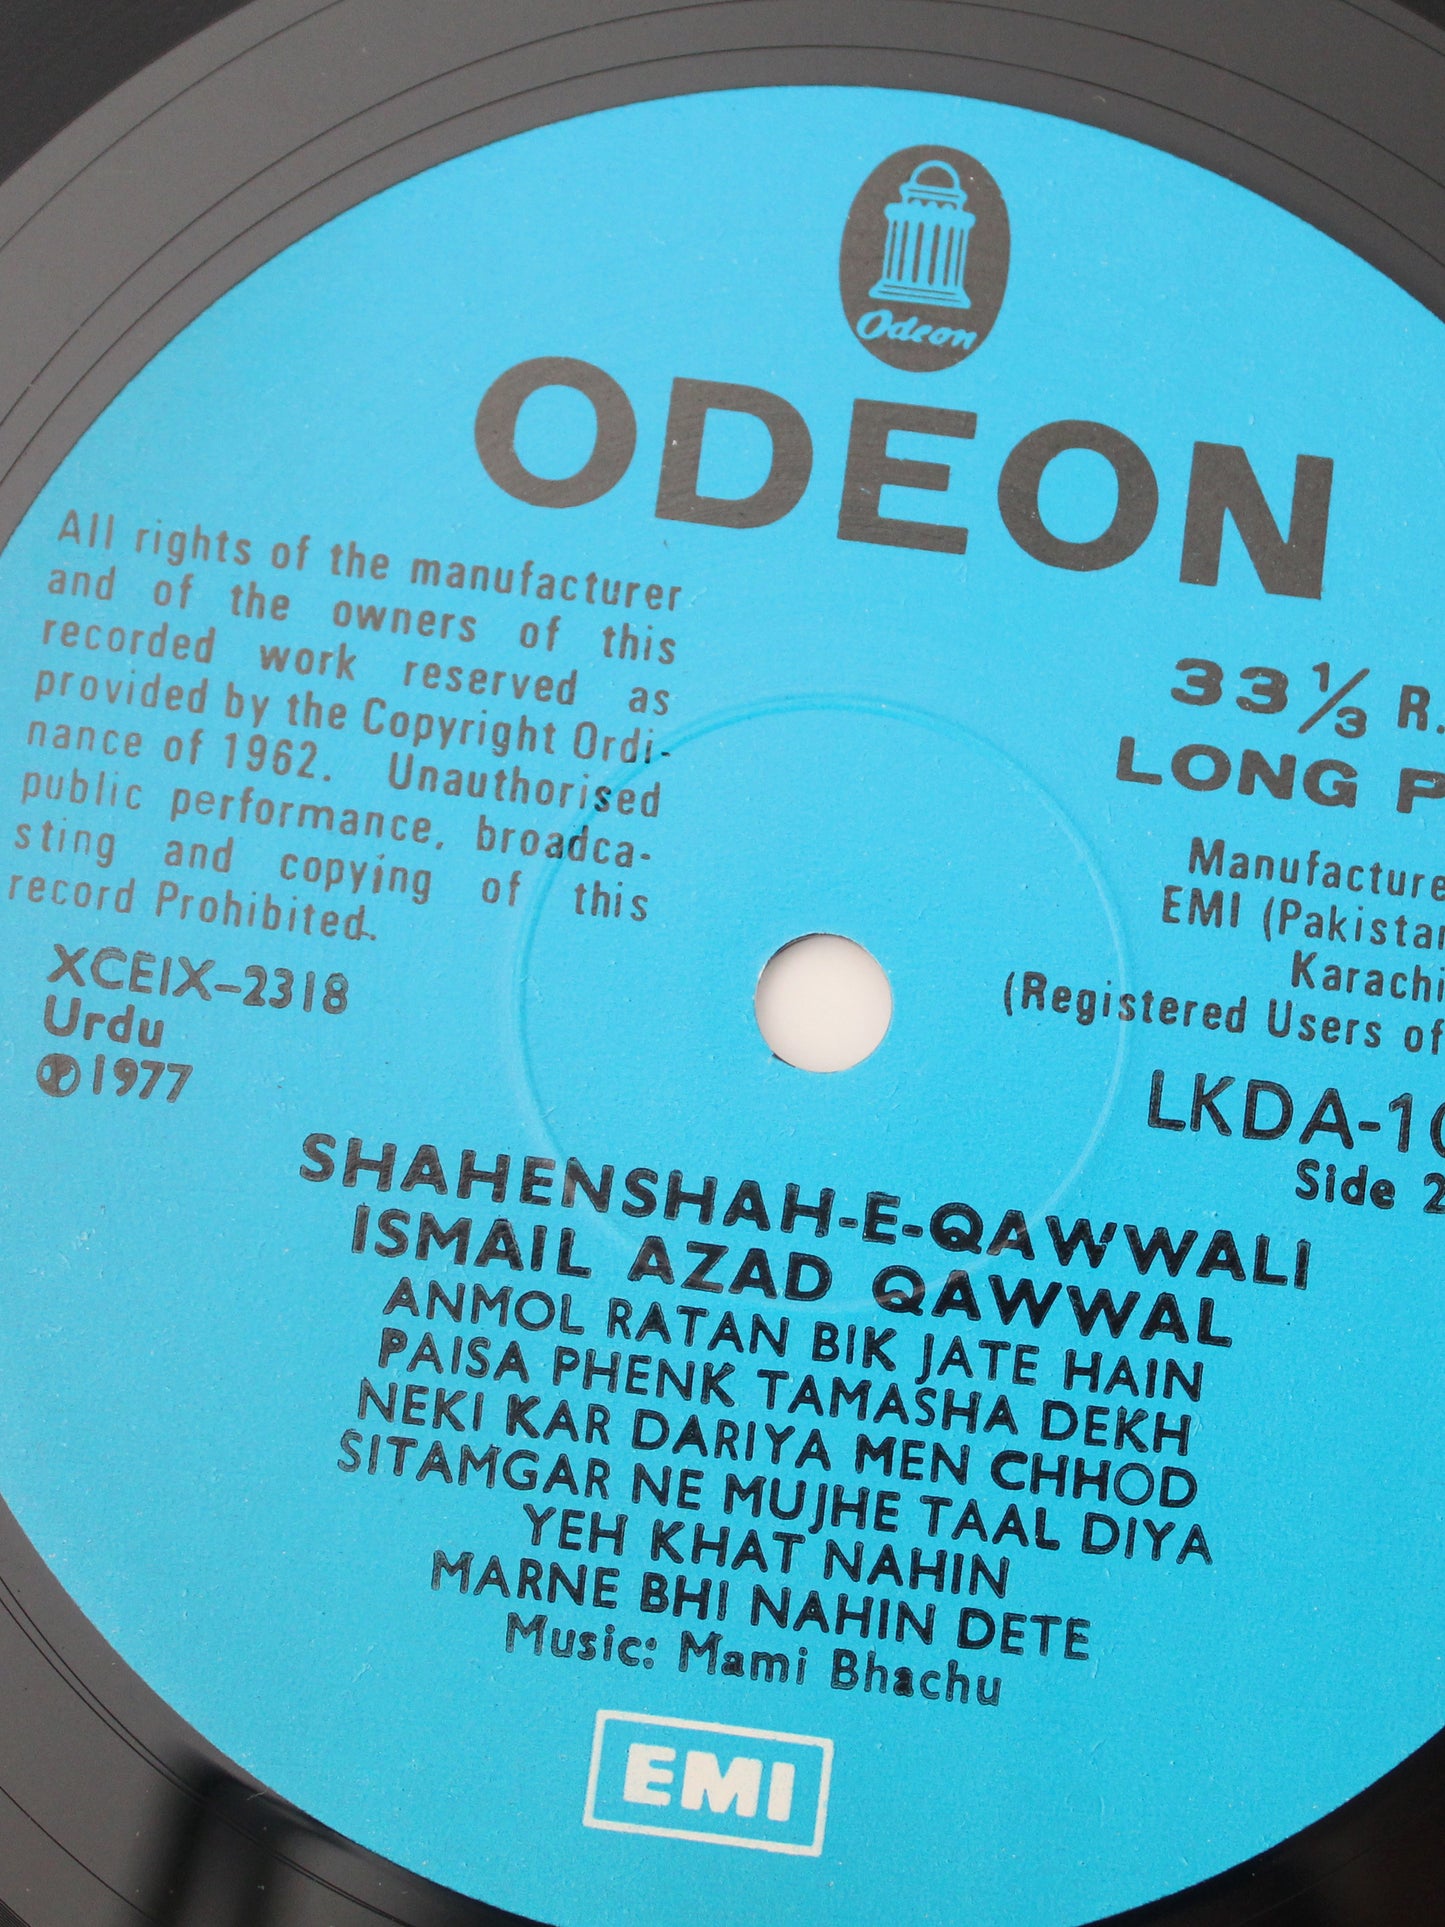 Vintage | 1977 "Shahenshah-E-Qawali" Vinyl Record